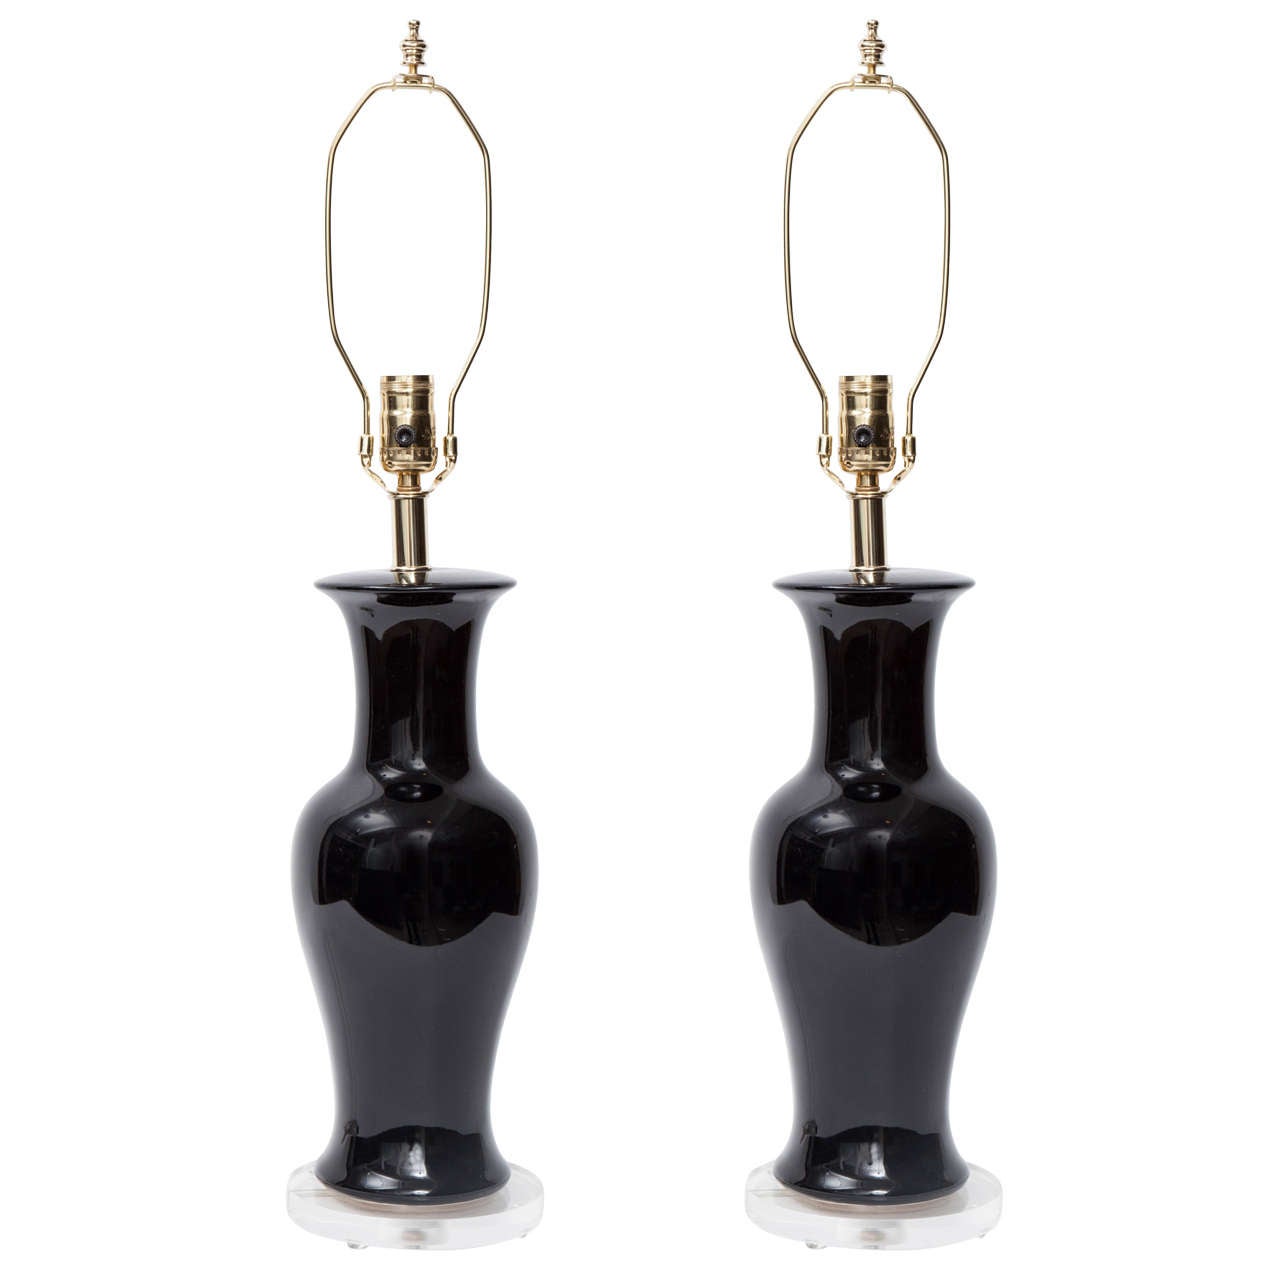 Pair of Black Urn Ceramic Lamps